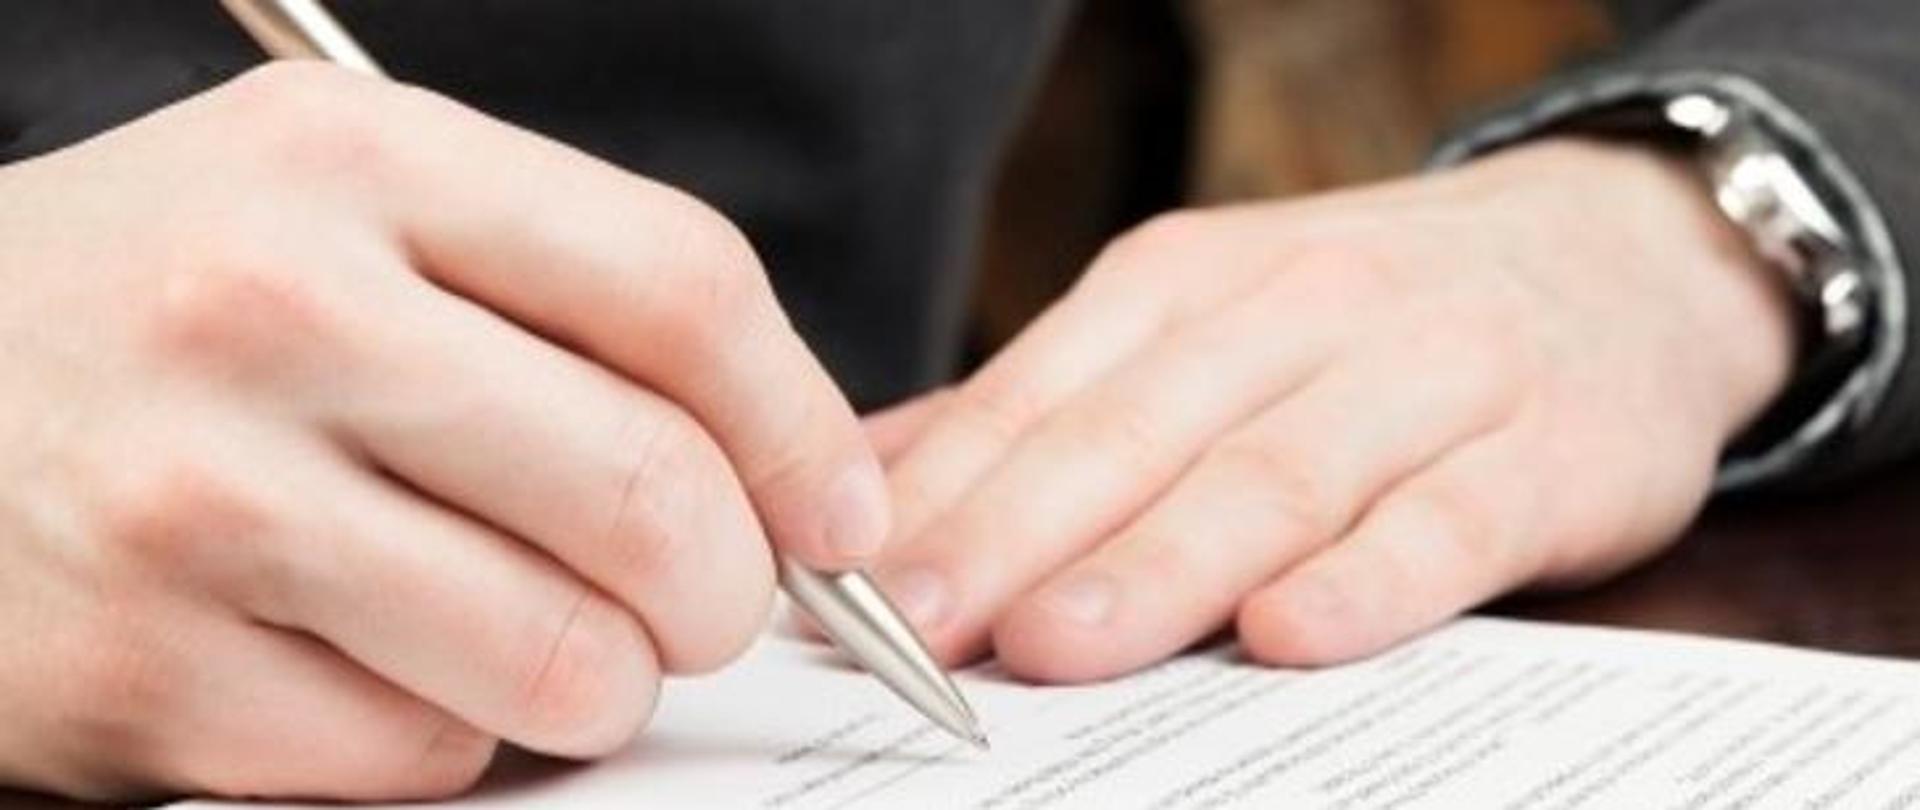 Na zdjęciu widoczny jest dokument oraz dłonie. W jednej z nich mężczyzna trzyma długopis i podpisuje dokument. 